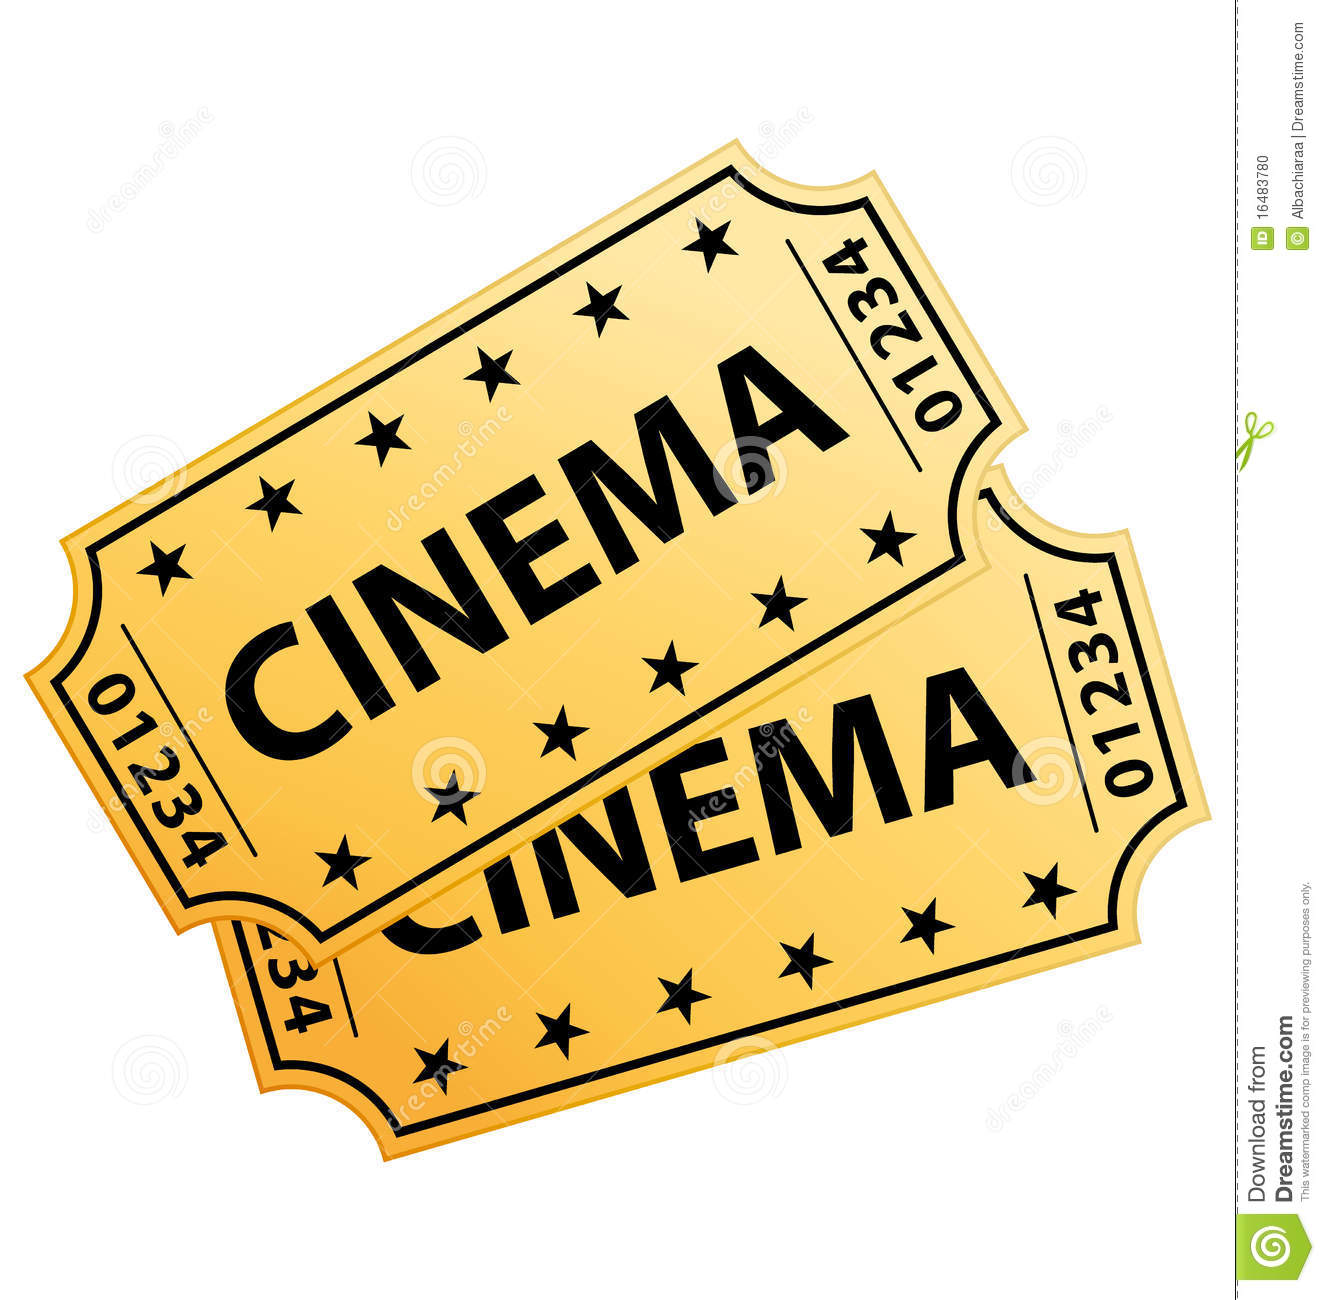 Cinema ticket clipart